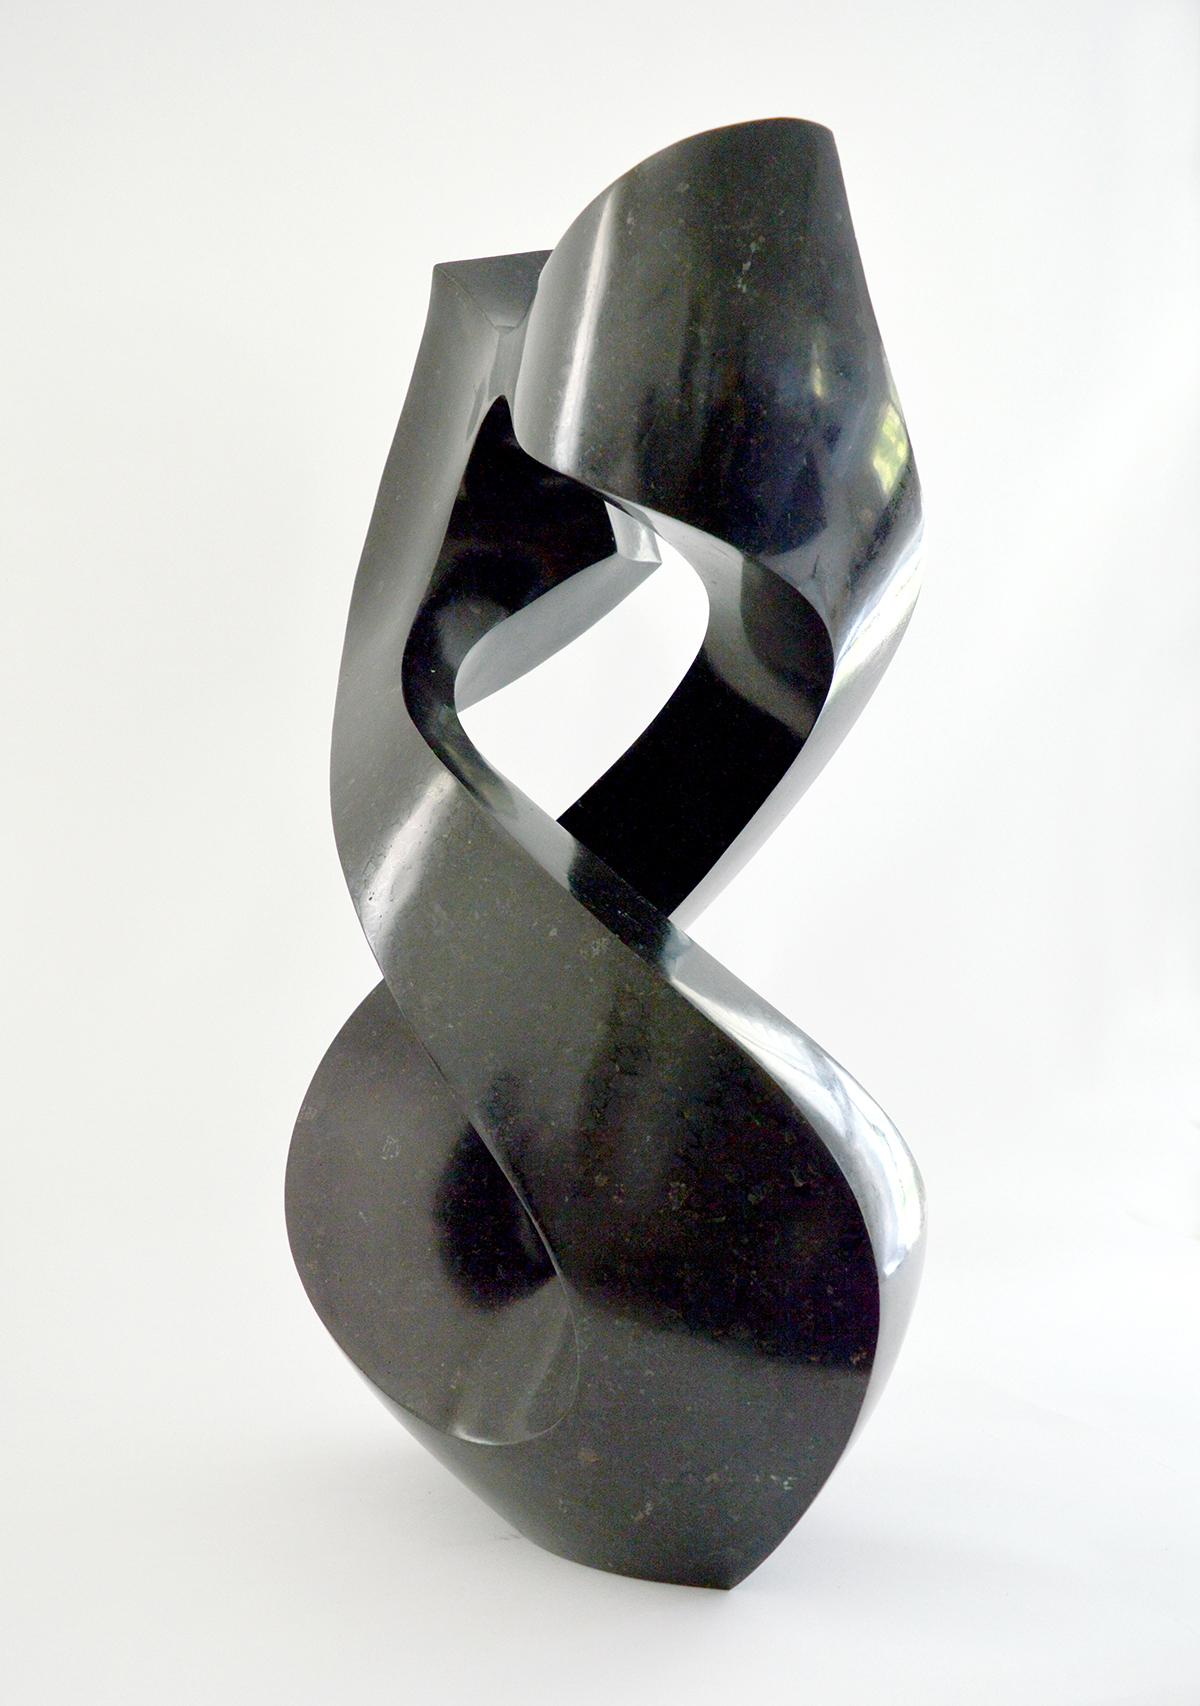 Halcyon Black 5/50 - Sculpture by Jeremy Guy